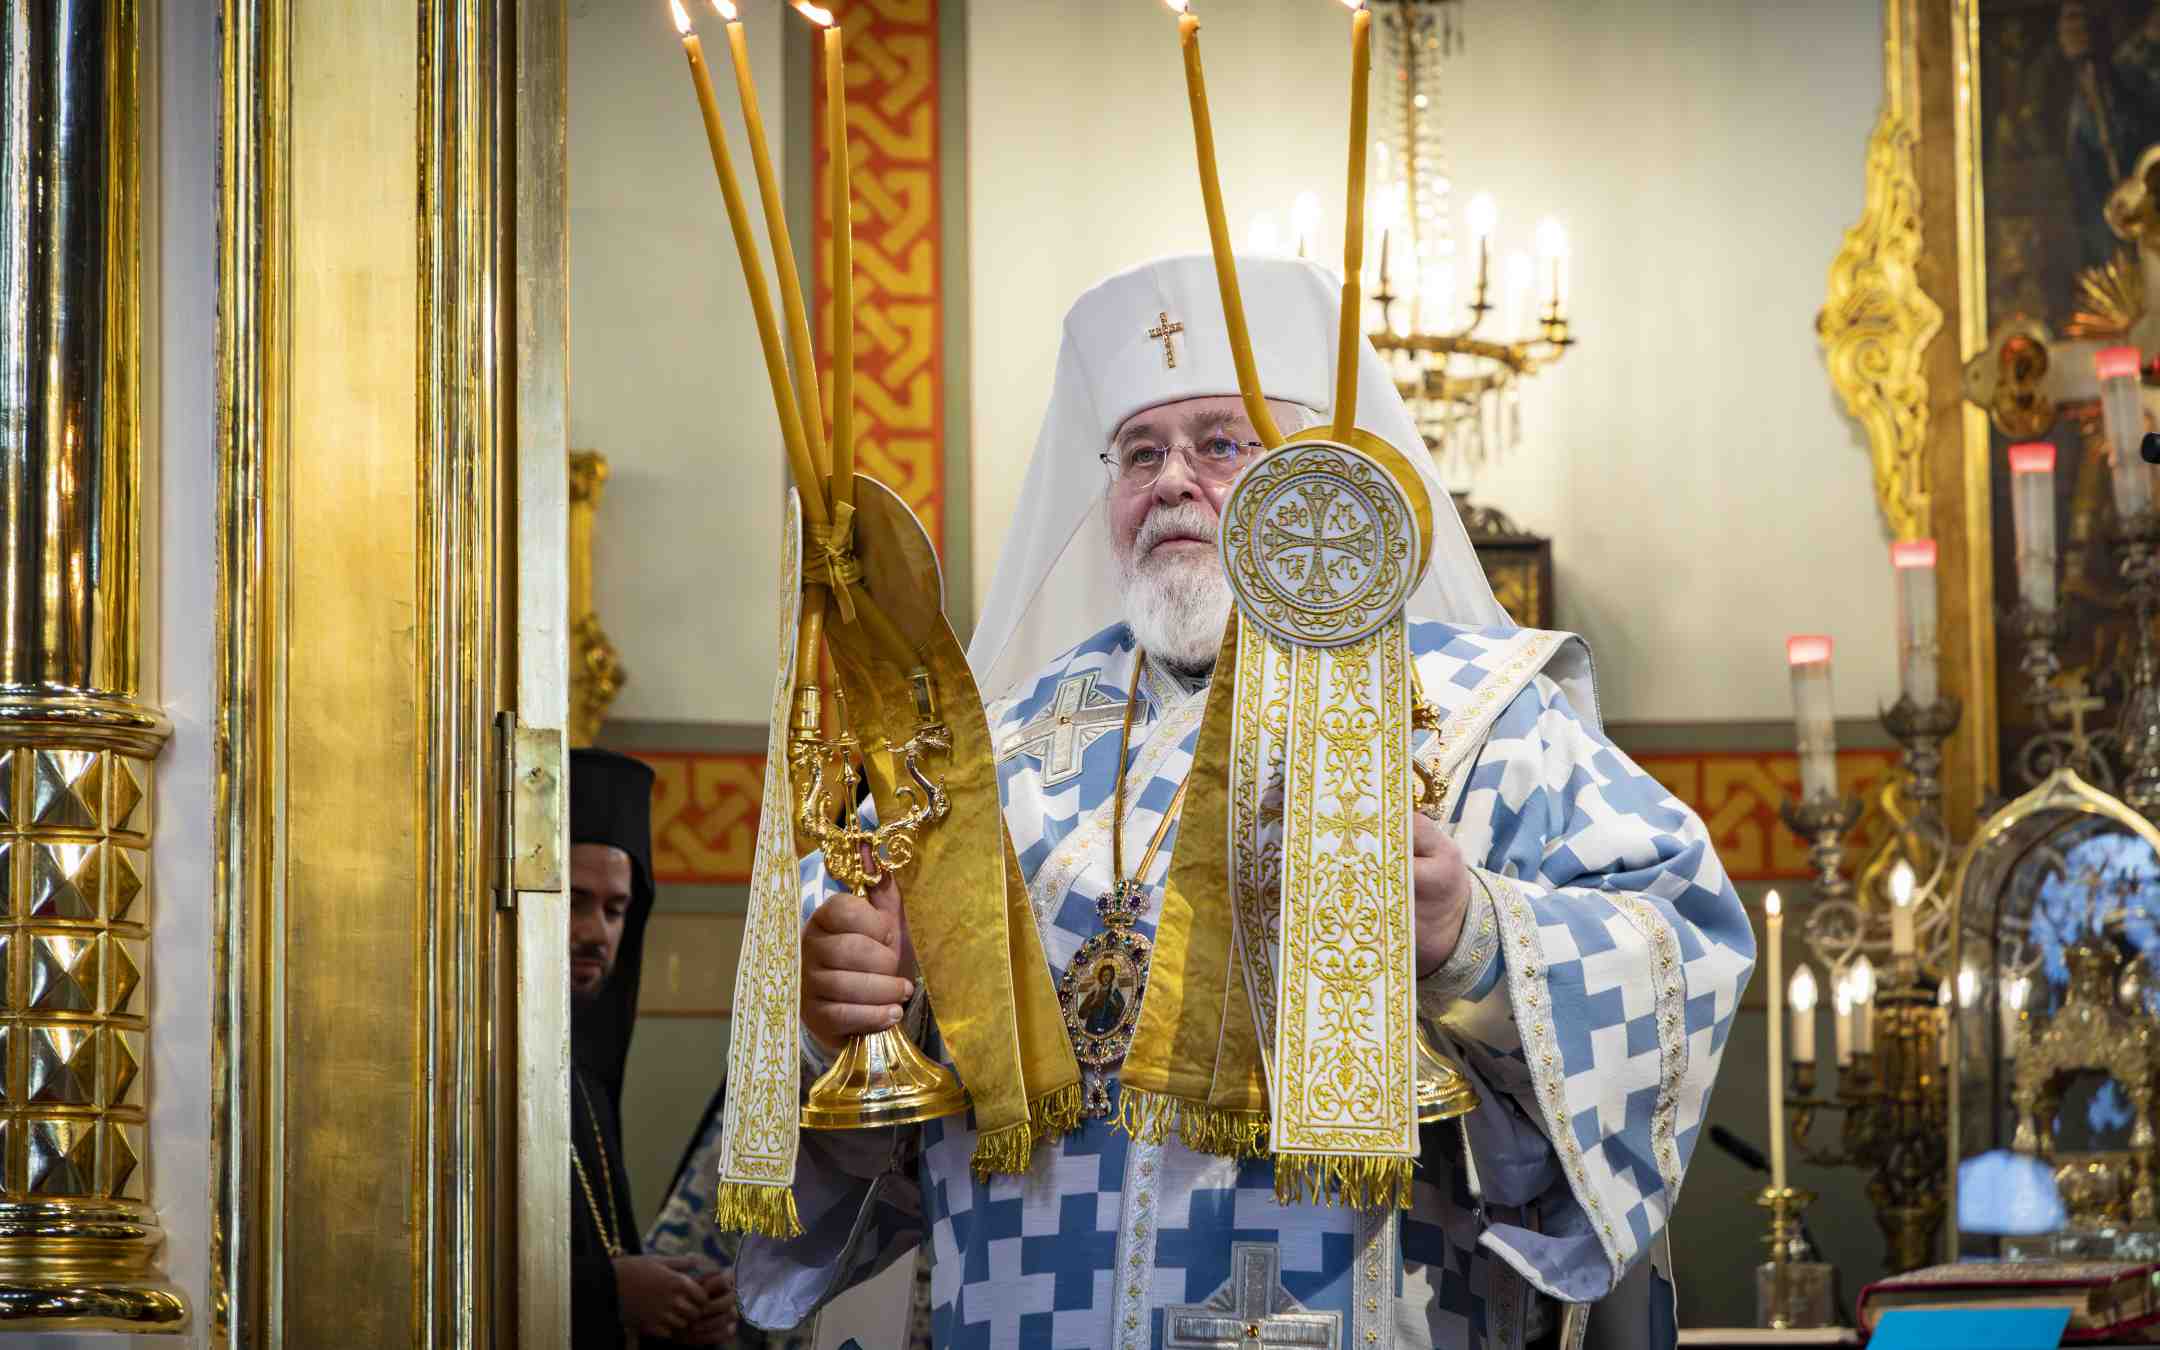 Arkkipiispa Leo siunaa kirkkokansaa Uspenskin katedraalissa